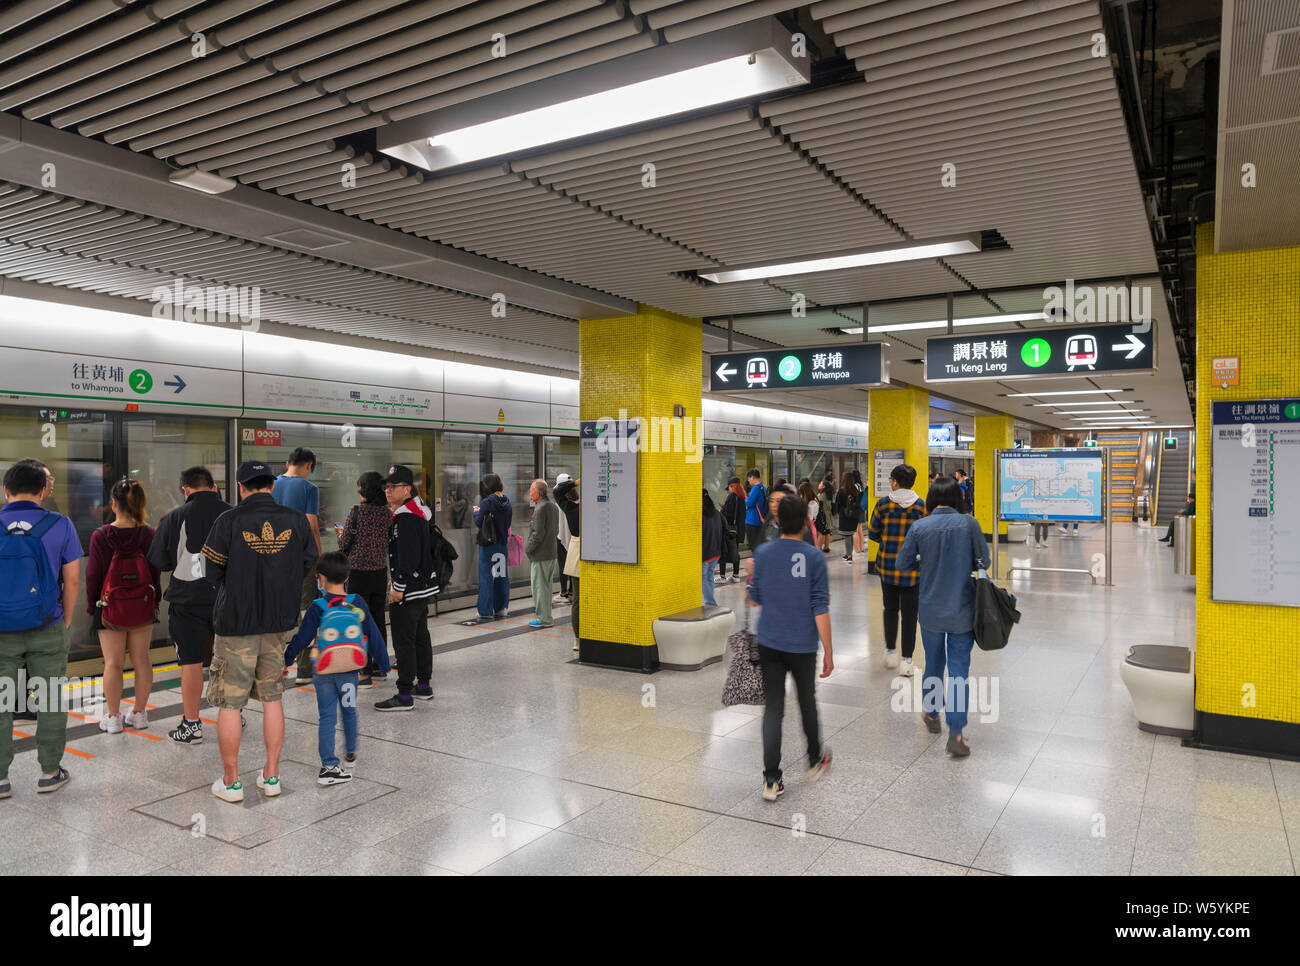 Platform at Wong Tai Sin MTR station, Hong Kong, China Stock Photo